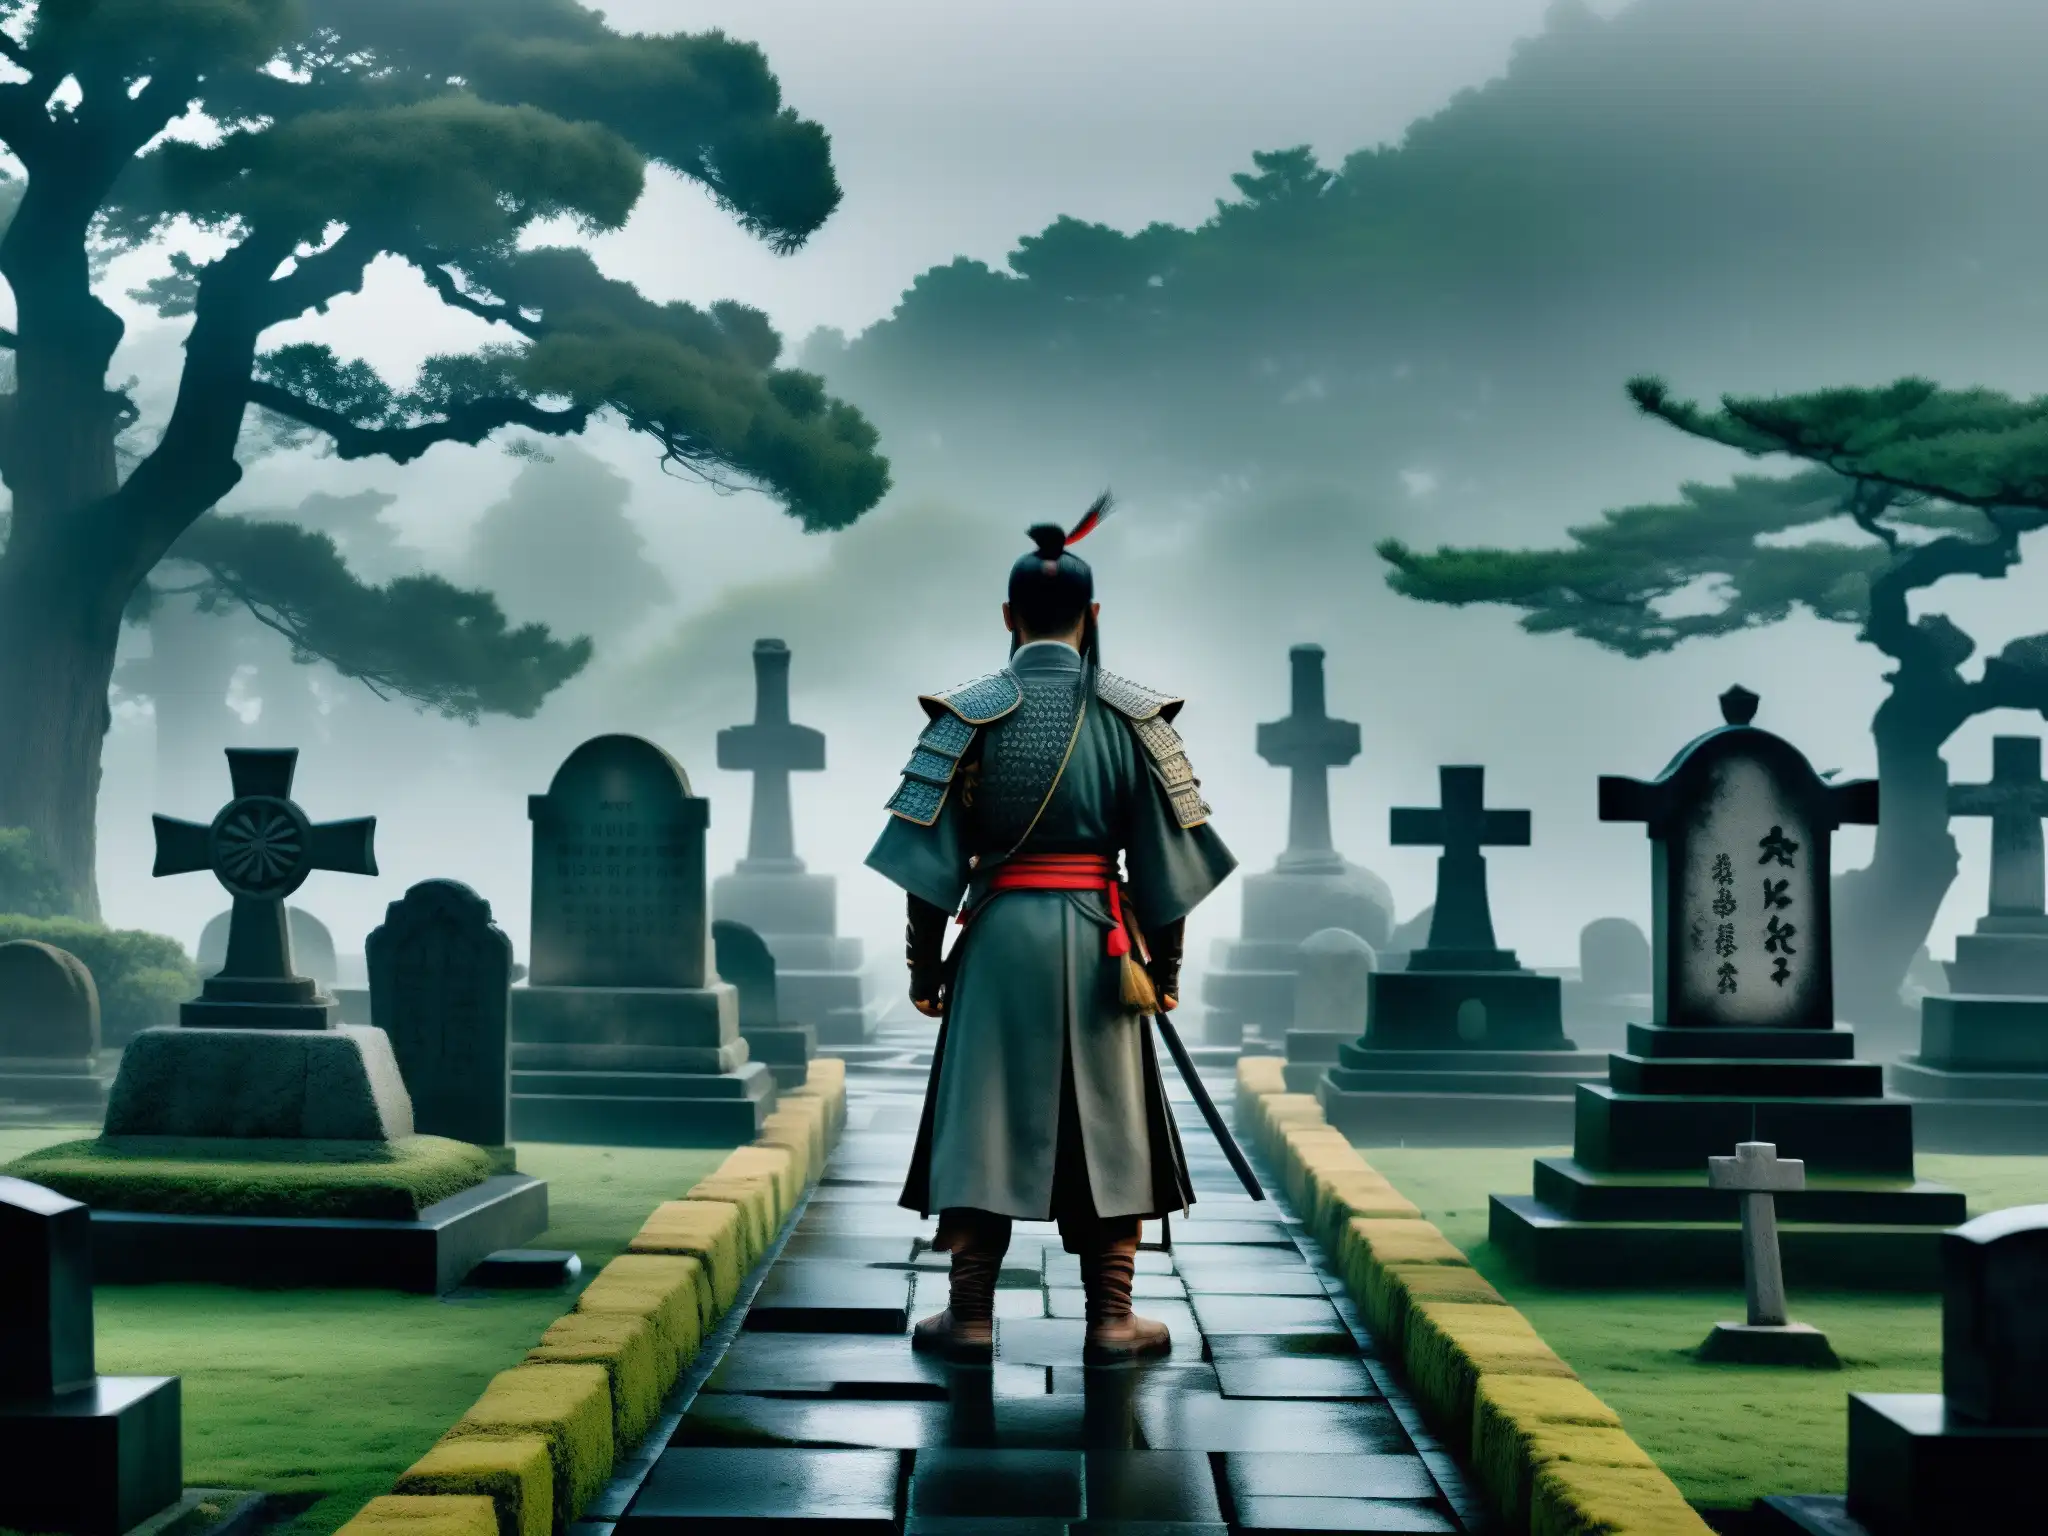 Misterioso cementerio de samuráis antiguos envuelto en niebla, con estatuas y tumbas cubiertas de musgo